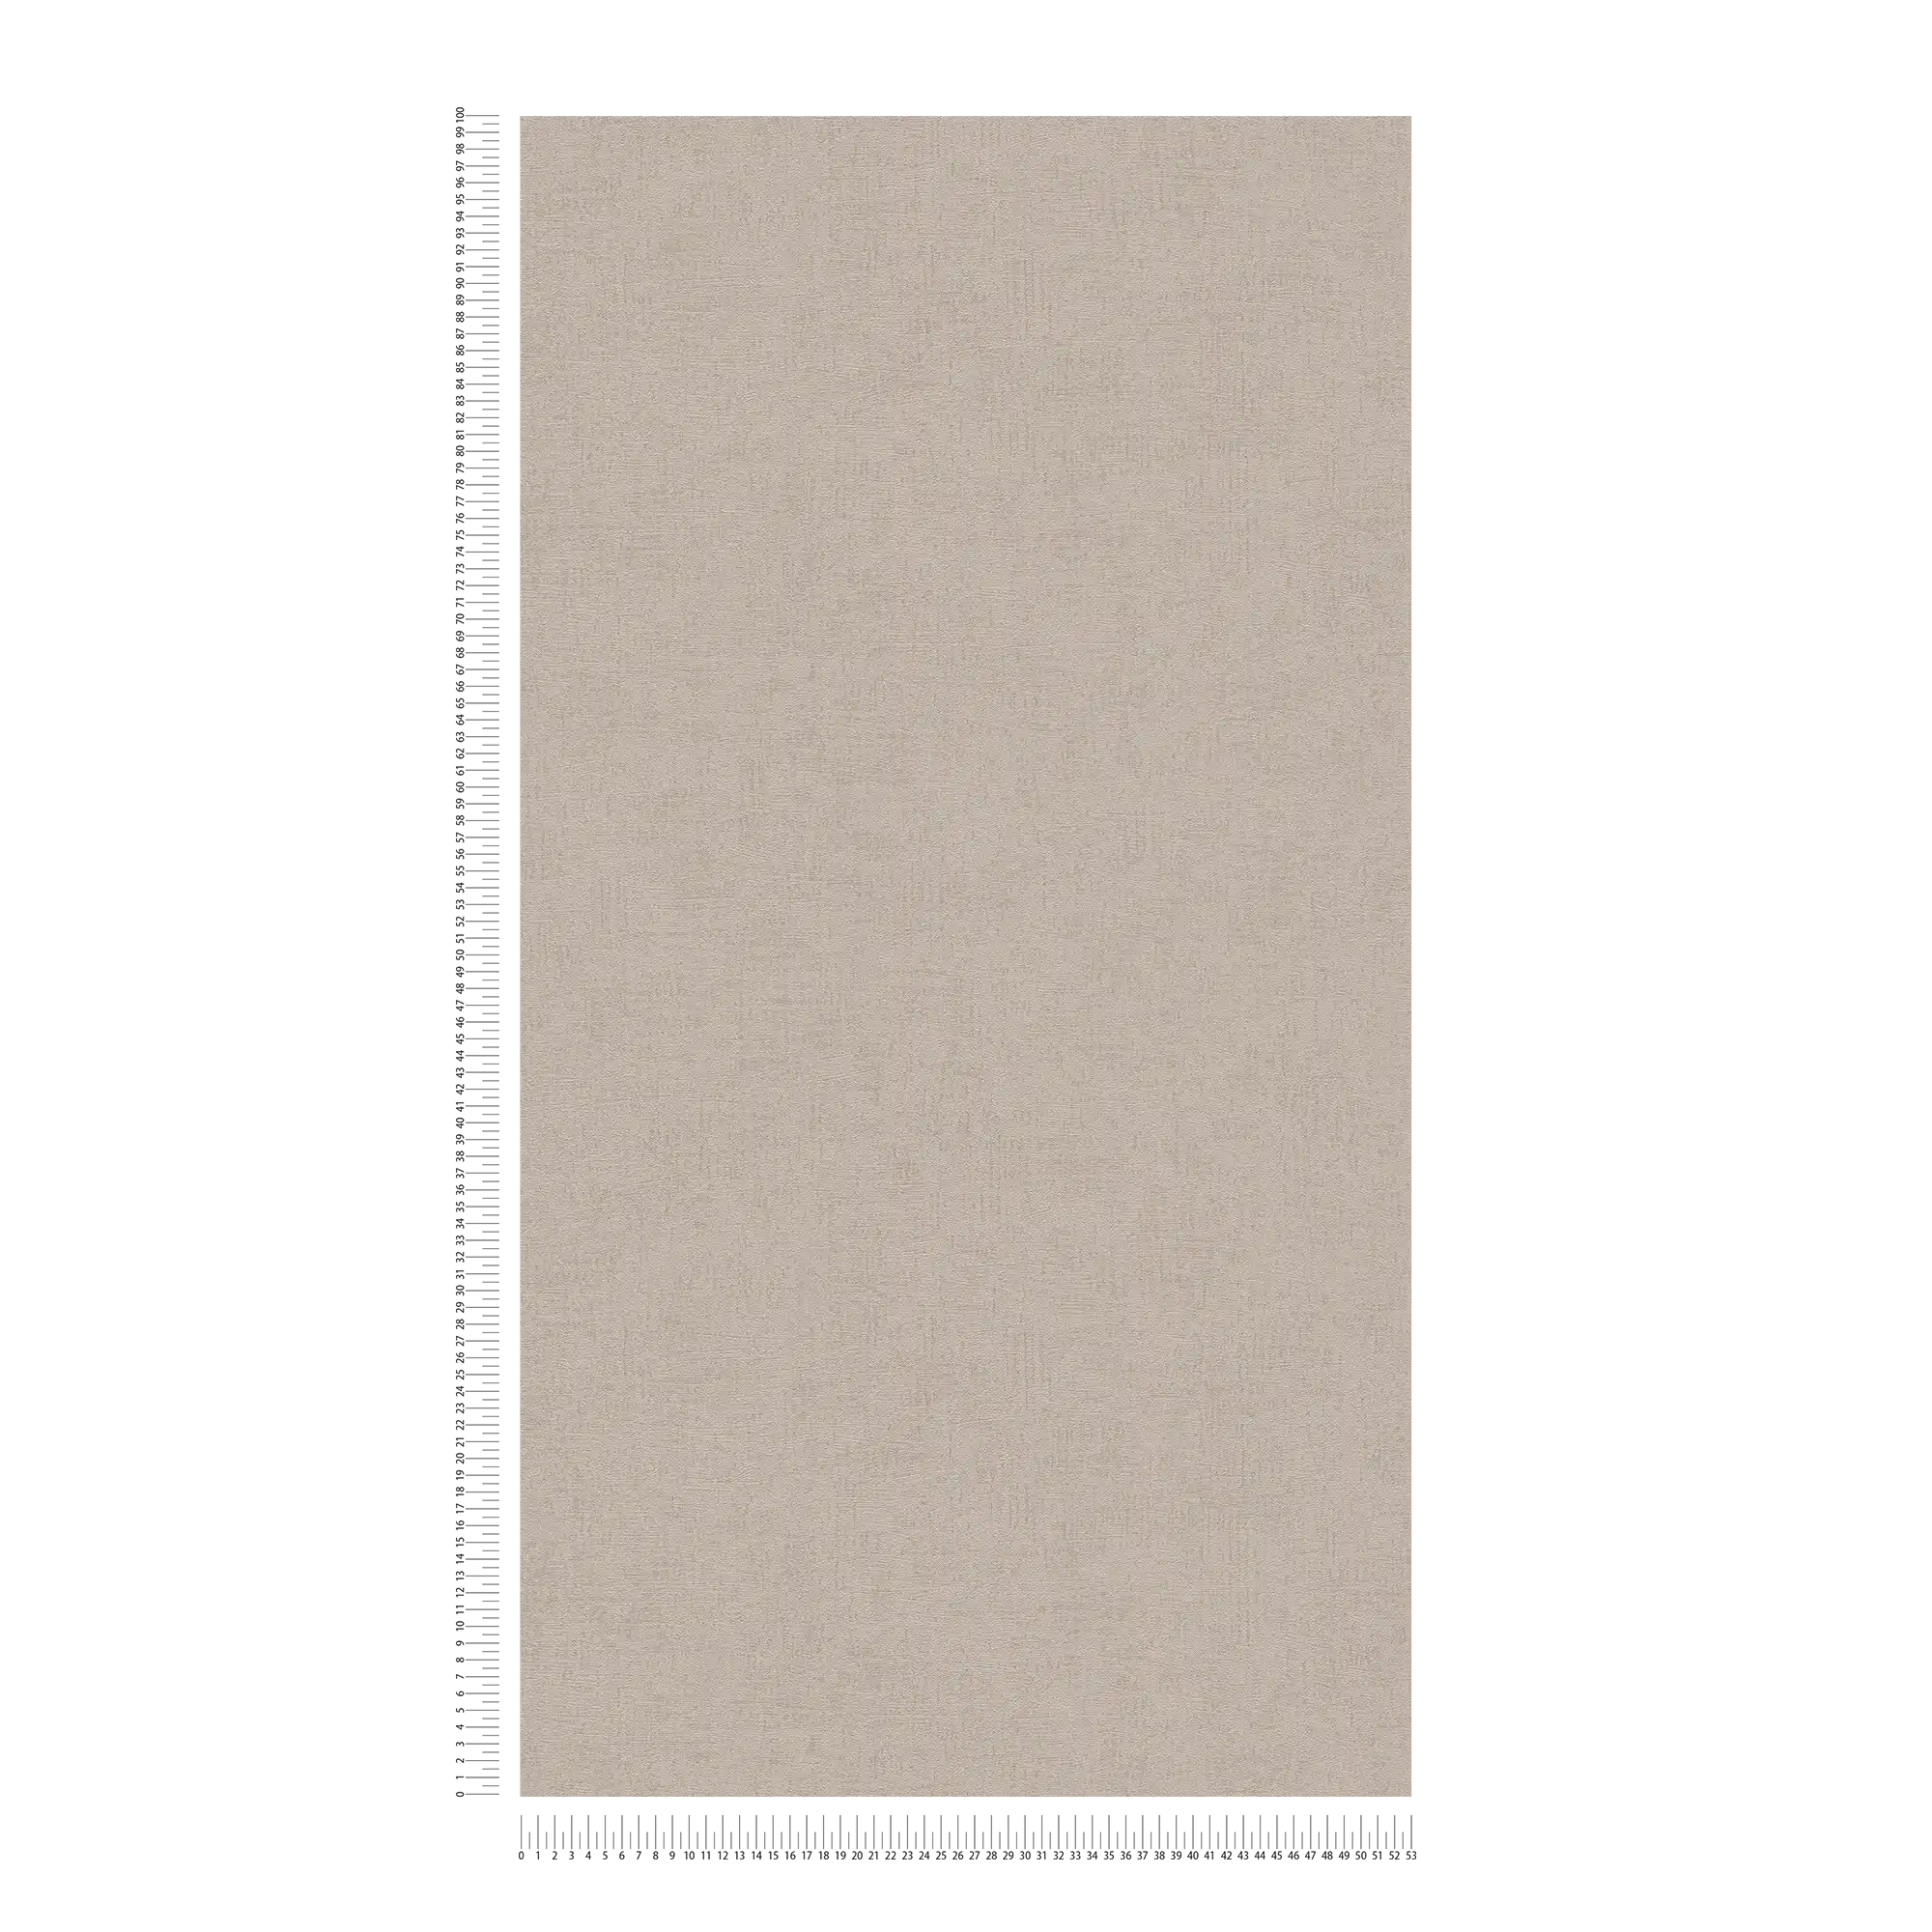             papel pintado gris-marrón con brillo metálico y estructura en relieve - marrón, metálico
        